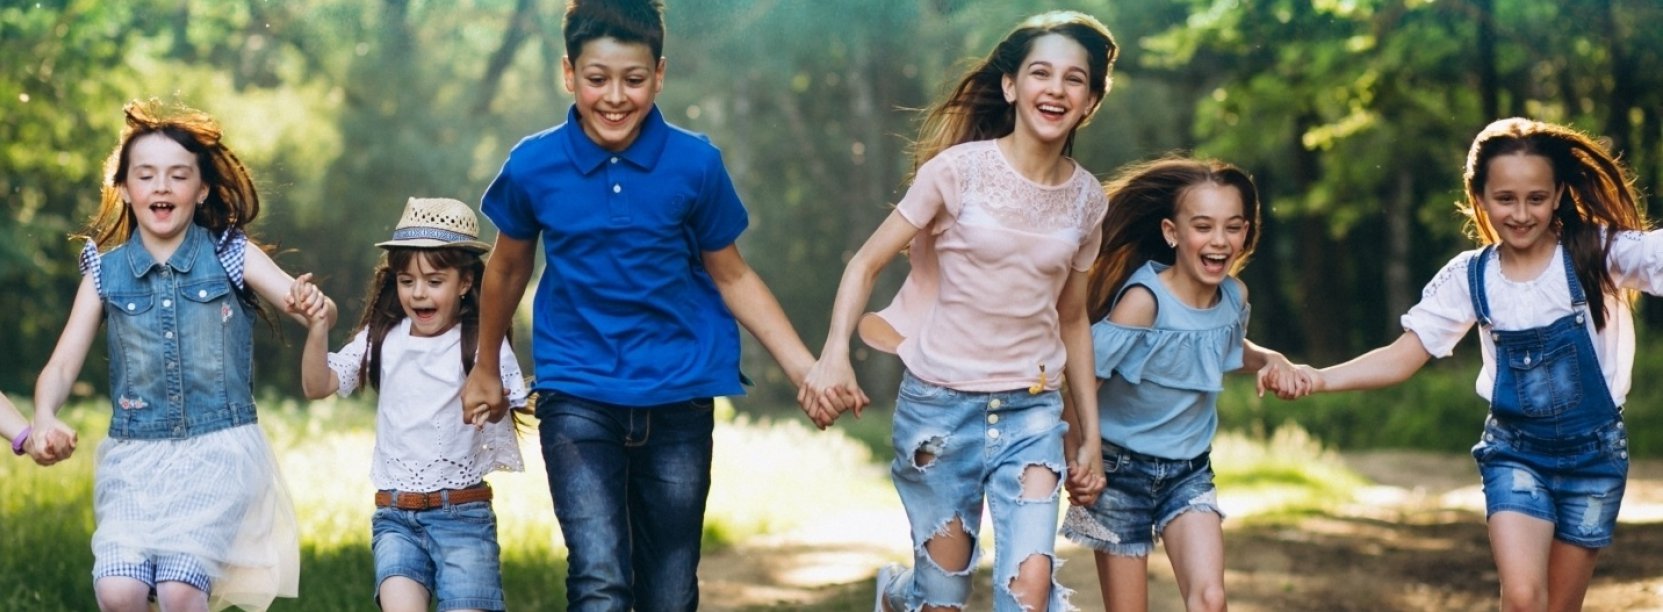 Grupka uśmiechniętych dzieci, trzymających się za ręce i idących przez leśną drogę